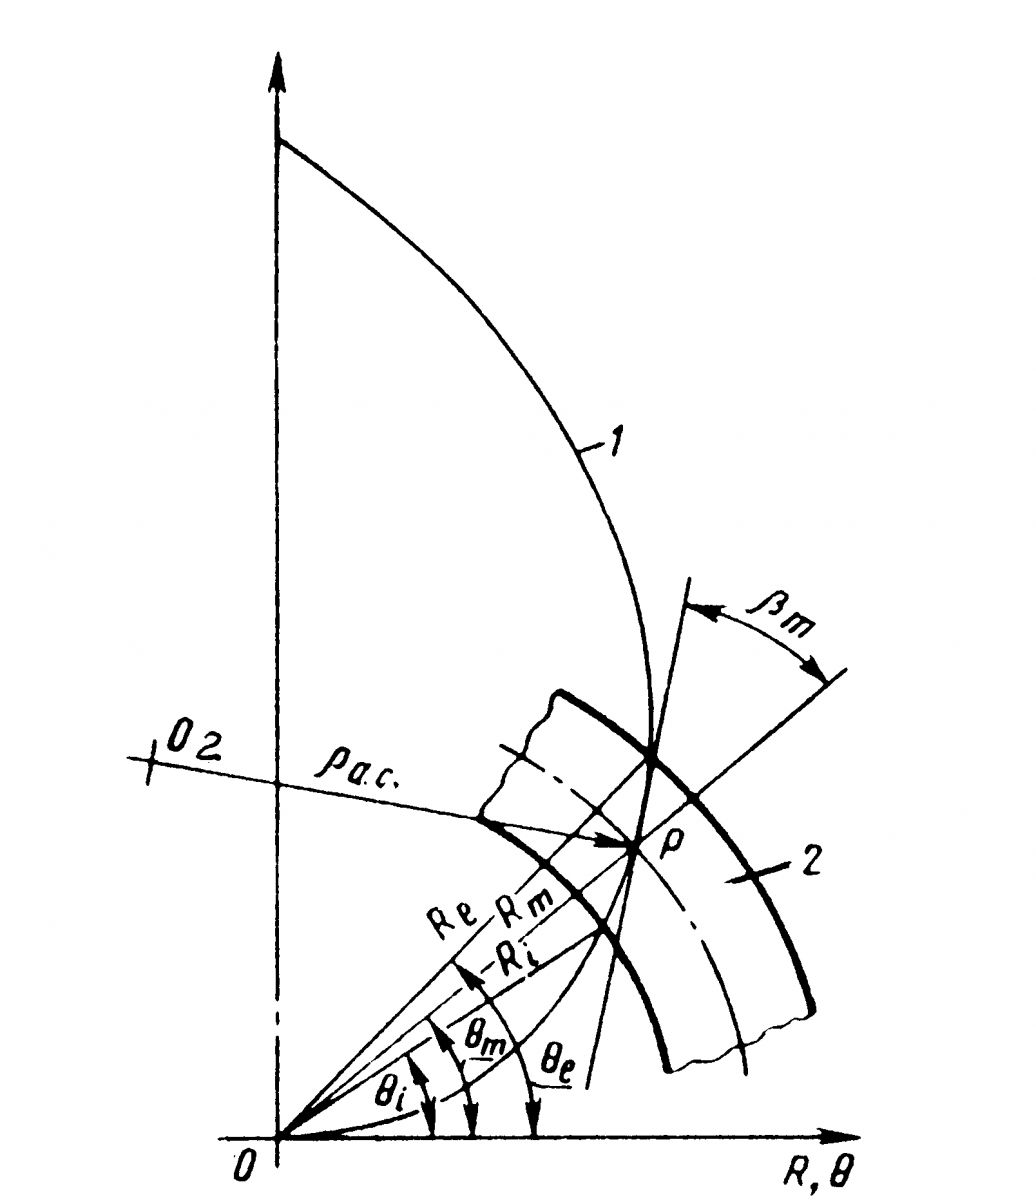  Рис. 4. Продольная кривизна, выполненная по спирали Архимеда: θi, θm, θe — соответственно внутренний, средний, внешний углы поворота спирали; Ri, Rm, Re — соответственно внутреннее, среднее, внешнее конусные расстояния; 2 — зубчатое колесо; О2 — центр резцовой головки.